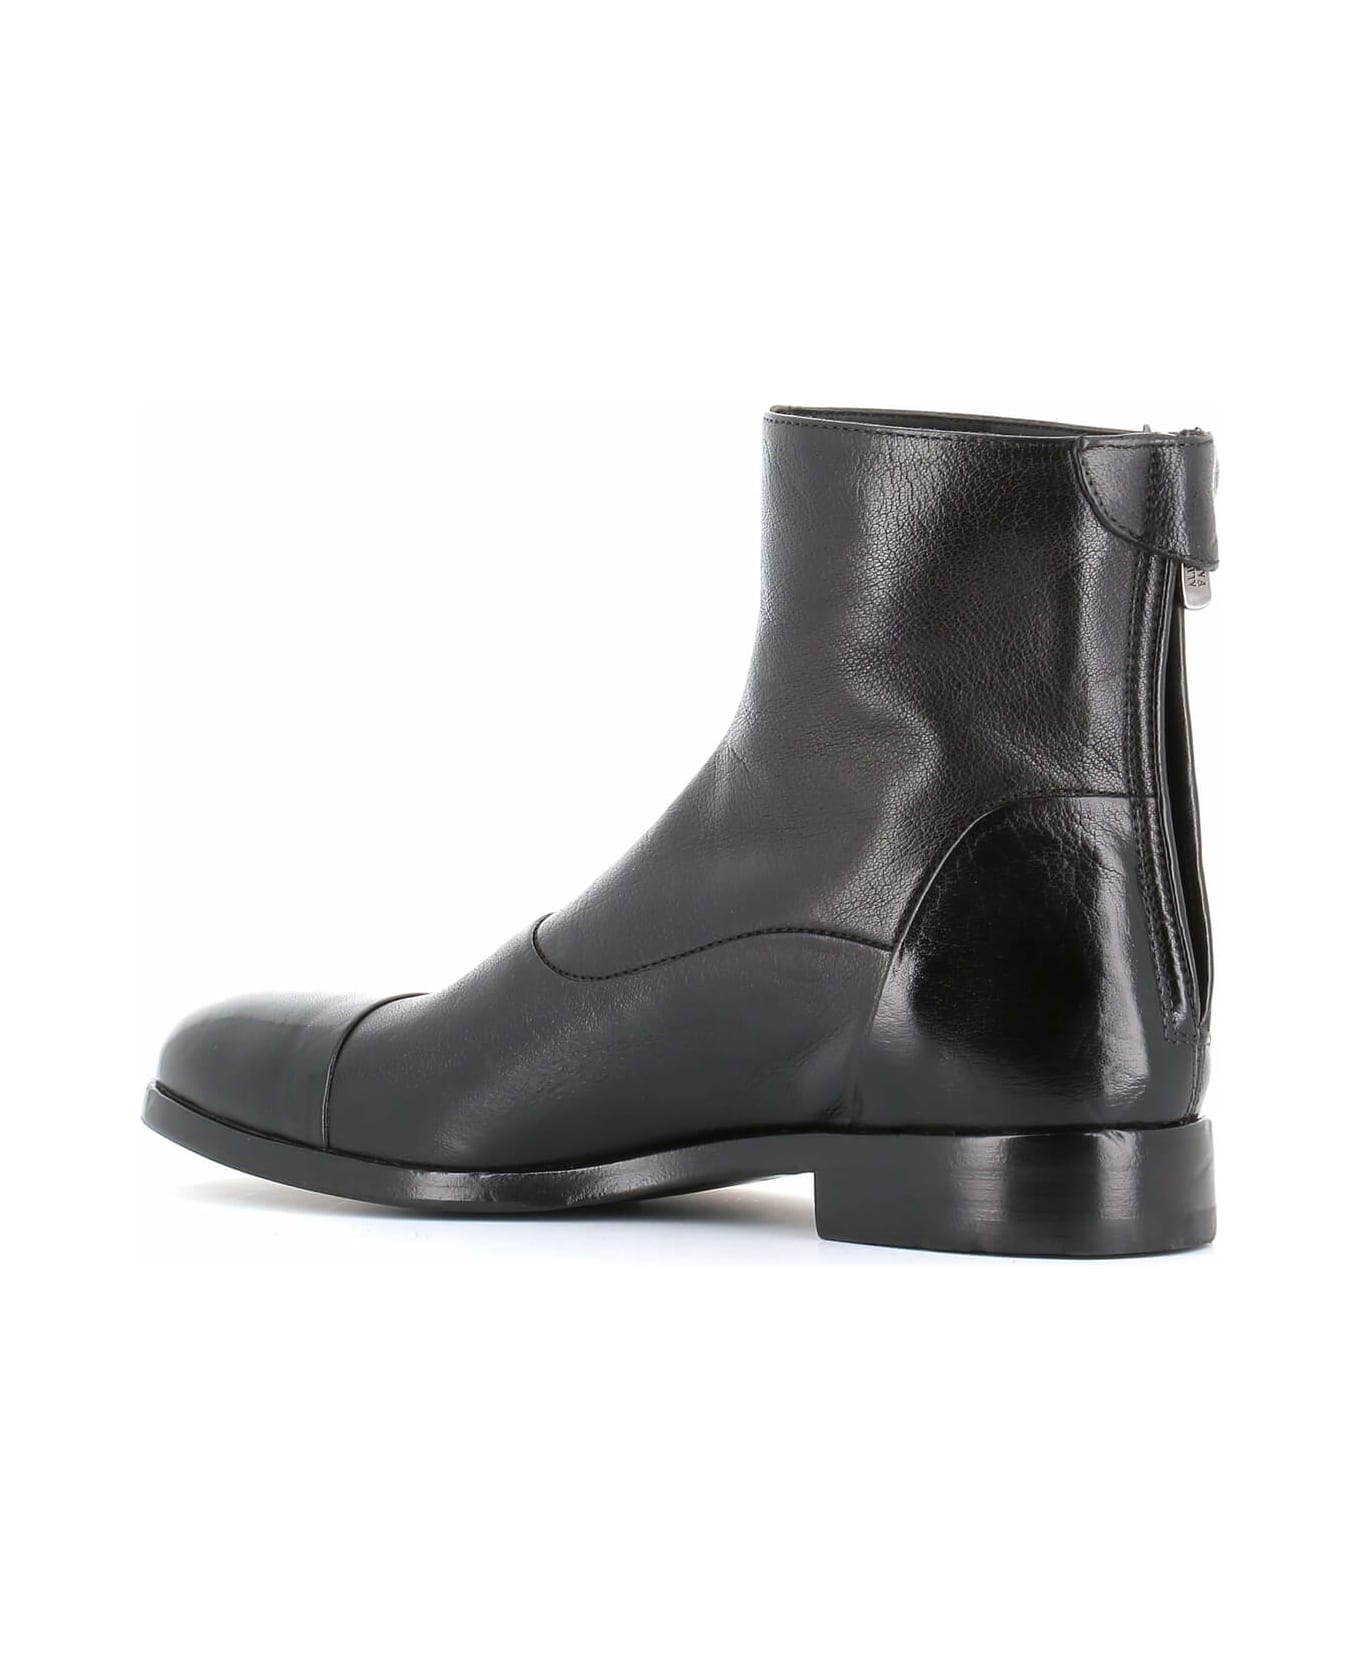 Alberto Fasciani Ankle Boot Zoe 56067 - Black ブーツ